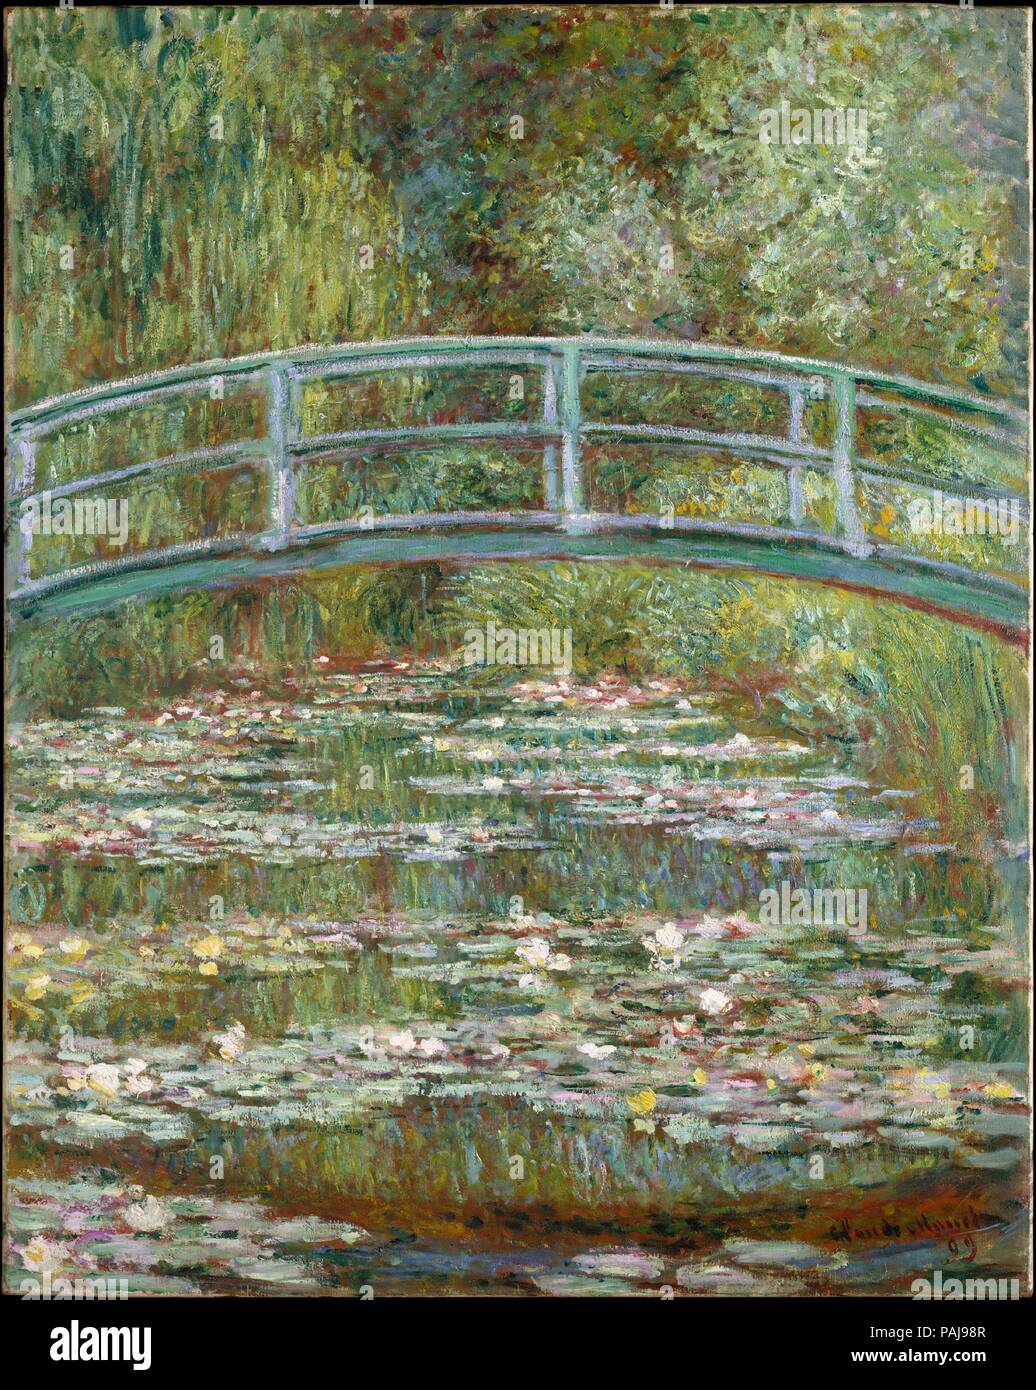 Ponte su un laghetto di ninfee. Artista: Claude Monet (francese, Parigi 1840-1926 Giverny). Dimensioni: 36 1/2 x 29 in. (92,7 x 73,7 cm). Data: 1899. In 1893, Monet, un appassionato giardiniere, terreni acquistati con un laghetto nei pressi di sua proprietà a Giverny, intenzionate a costruire qualcosa " per il piacere degli occhi e anche per motivi di dipingere". Il risultato è stato la sua acqua giglio di giardino. Nel 1899, ha iniziato una serie di diciotto vedute della passerella in legno sopra il laghetto, completando dodici dipinti tra cui la presente uno, che l'estate. Il formato verticale dell'immagine, inusuale in questa serie, dà Foto Stock